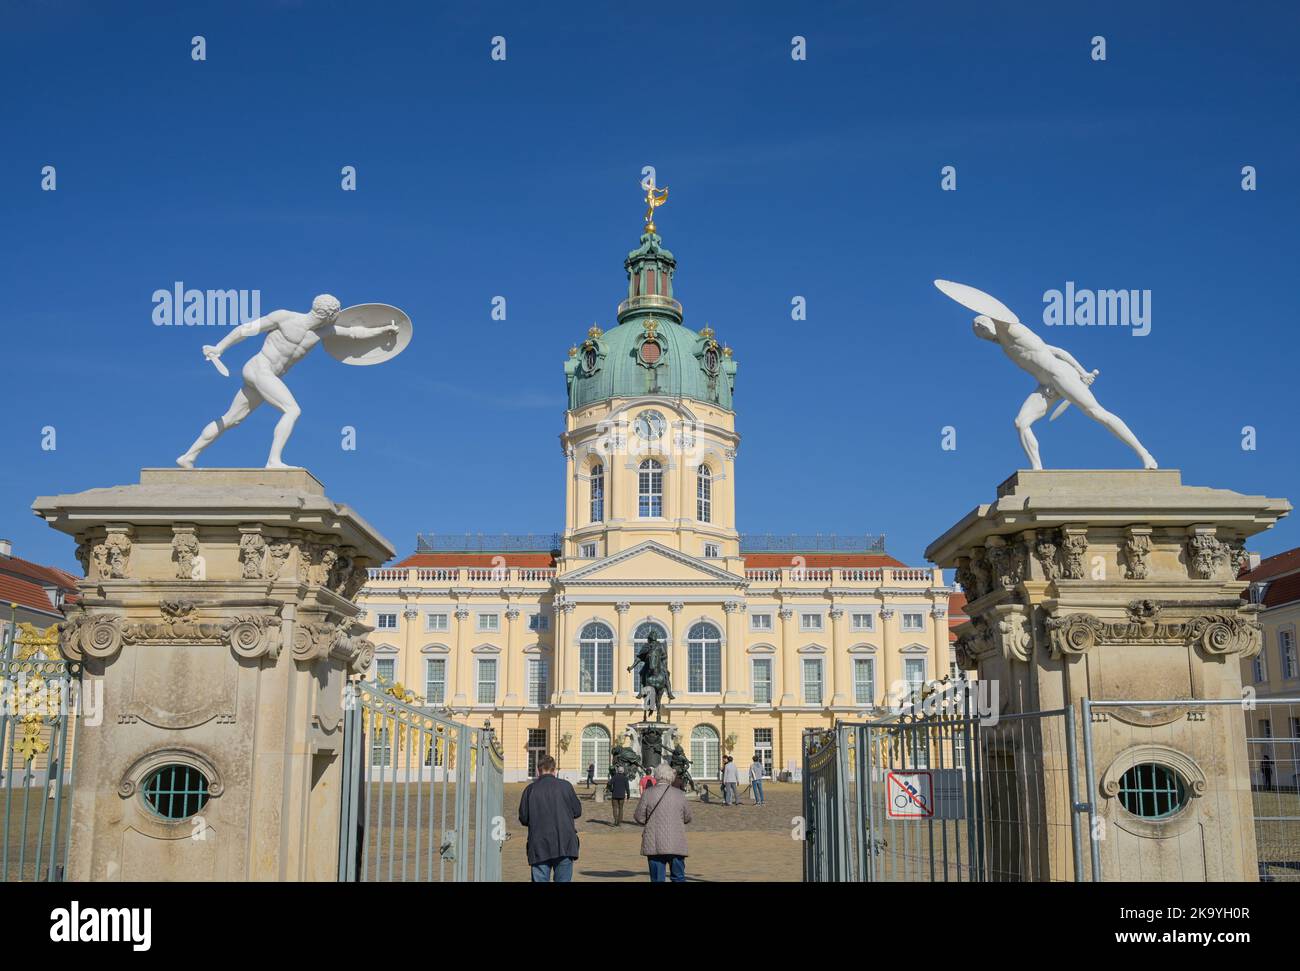 Figuren, Kämpfer mit Schild, Schloss Charlottenburg, Spandauer Damm, Charlottenburg, Berlin, Deutschland Stock Photo